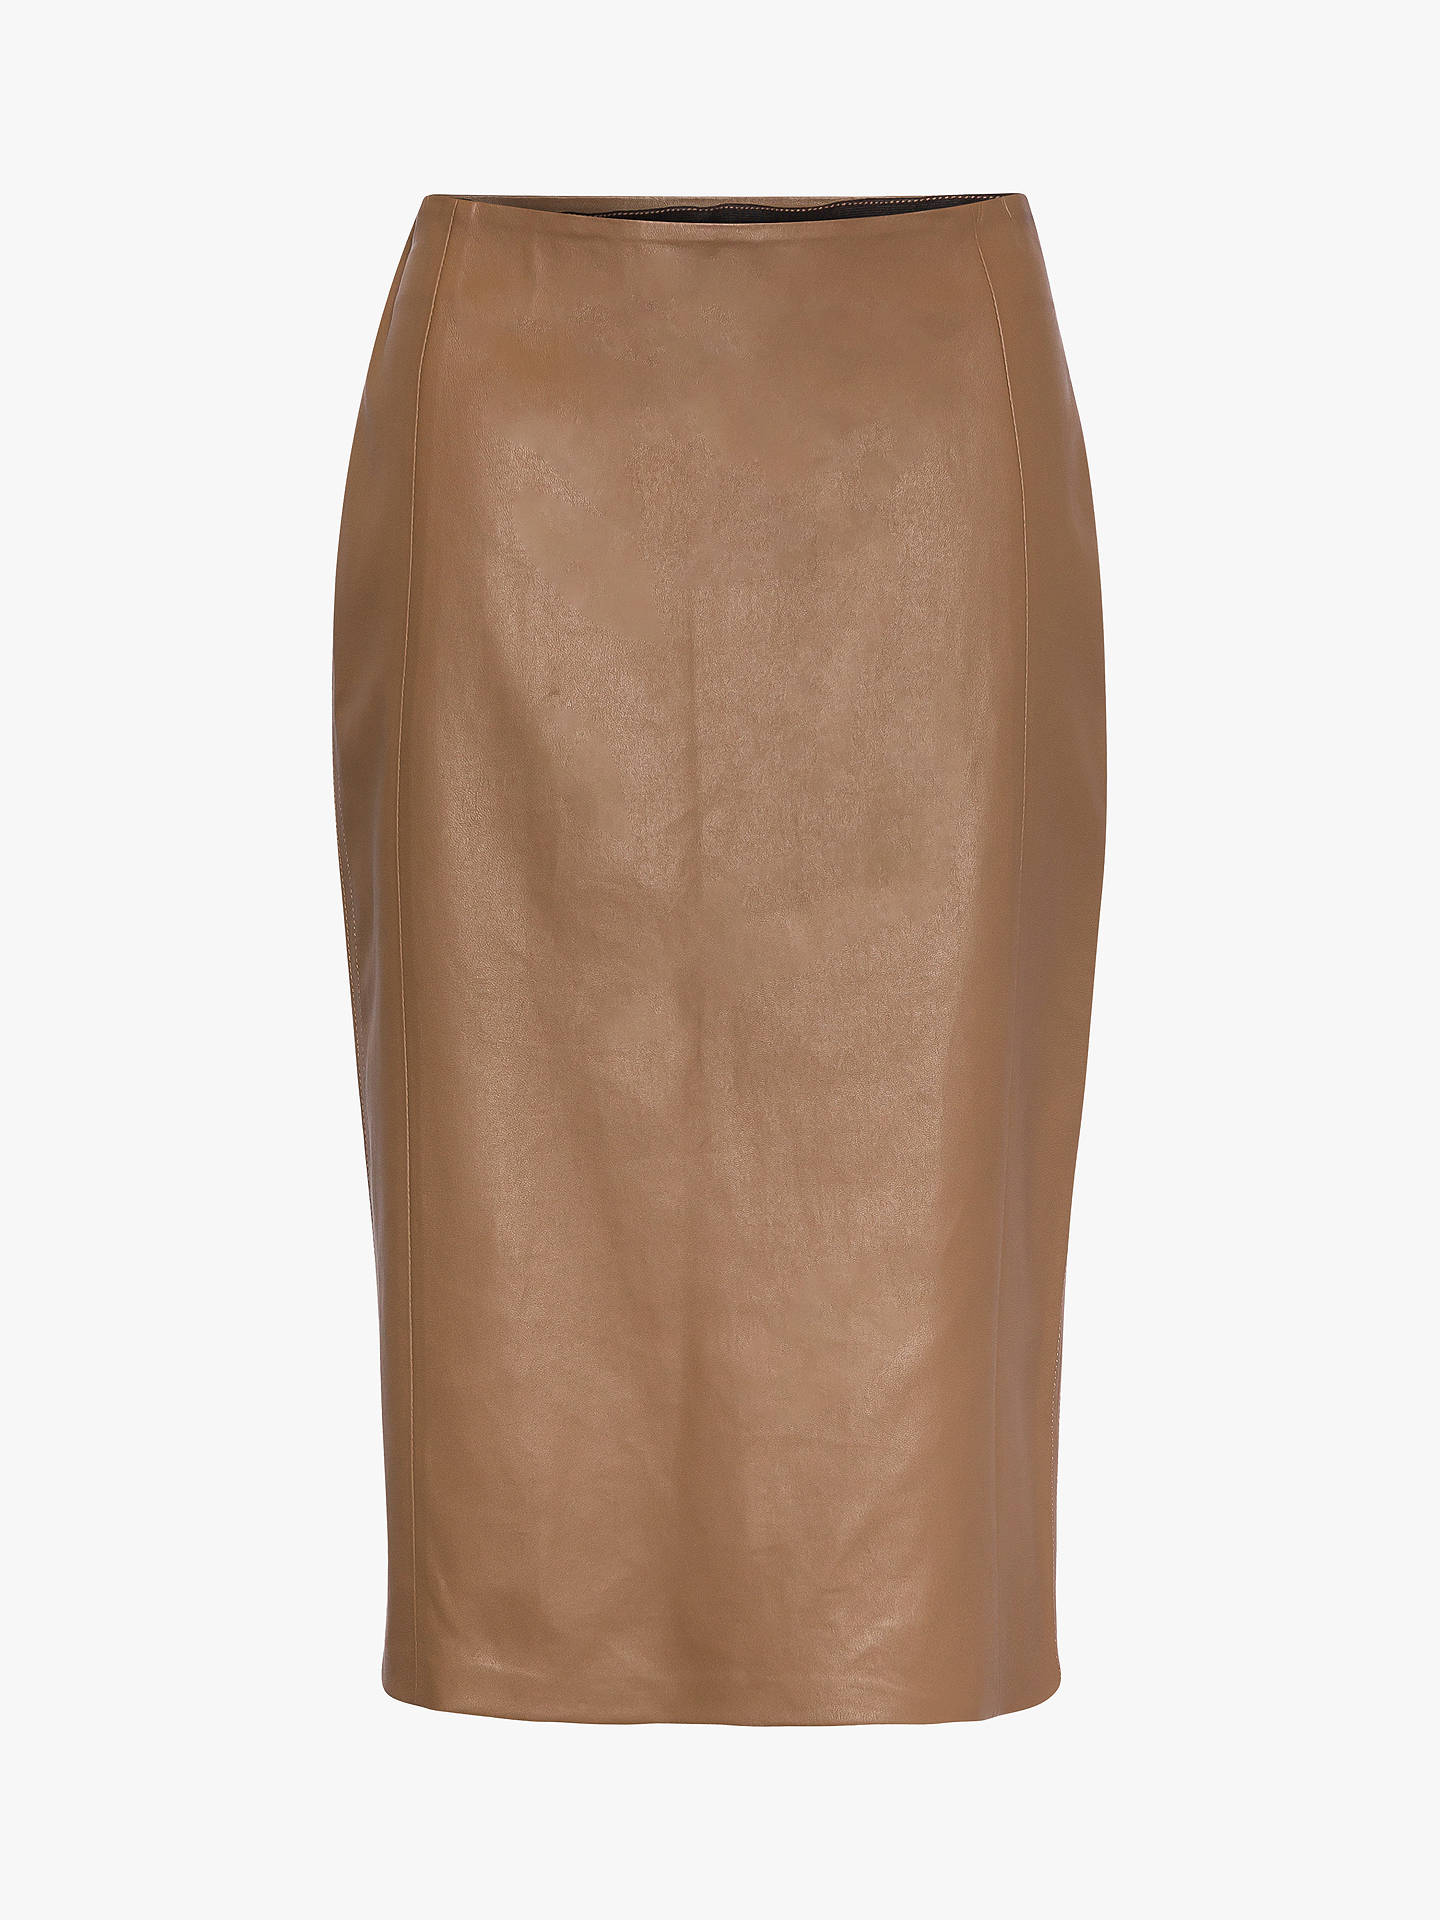 Gerard Darel Leather Pencil Skirt, Brown at John Lewis & Partners